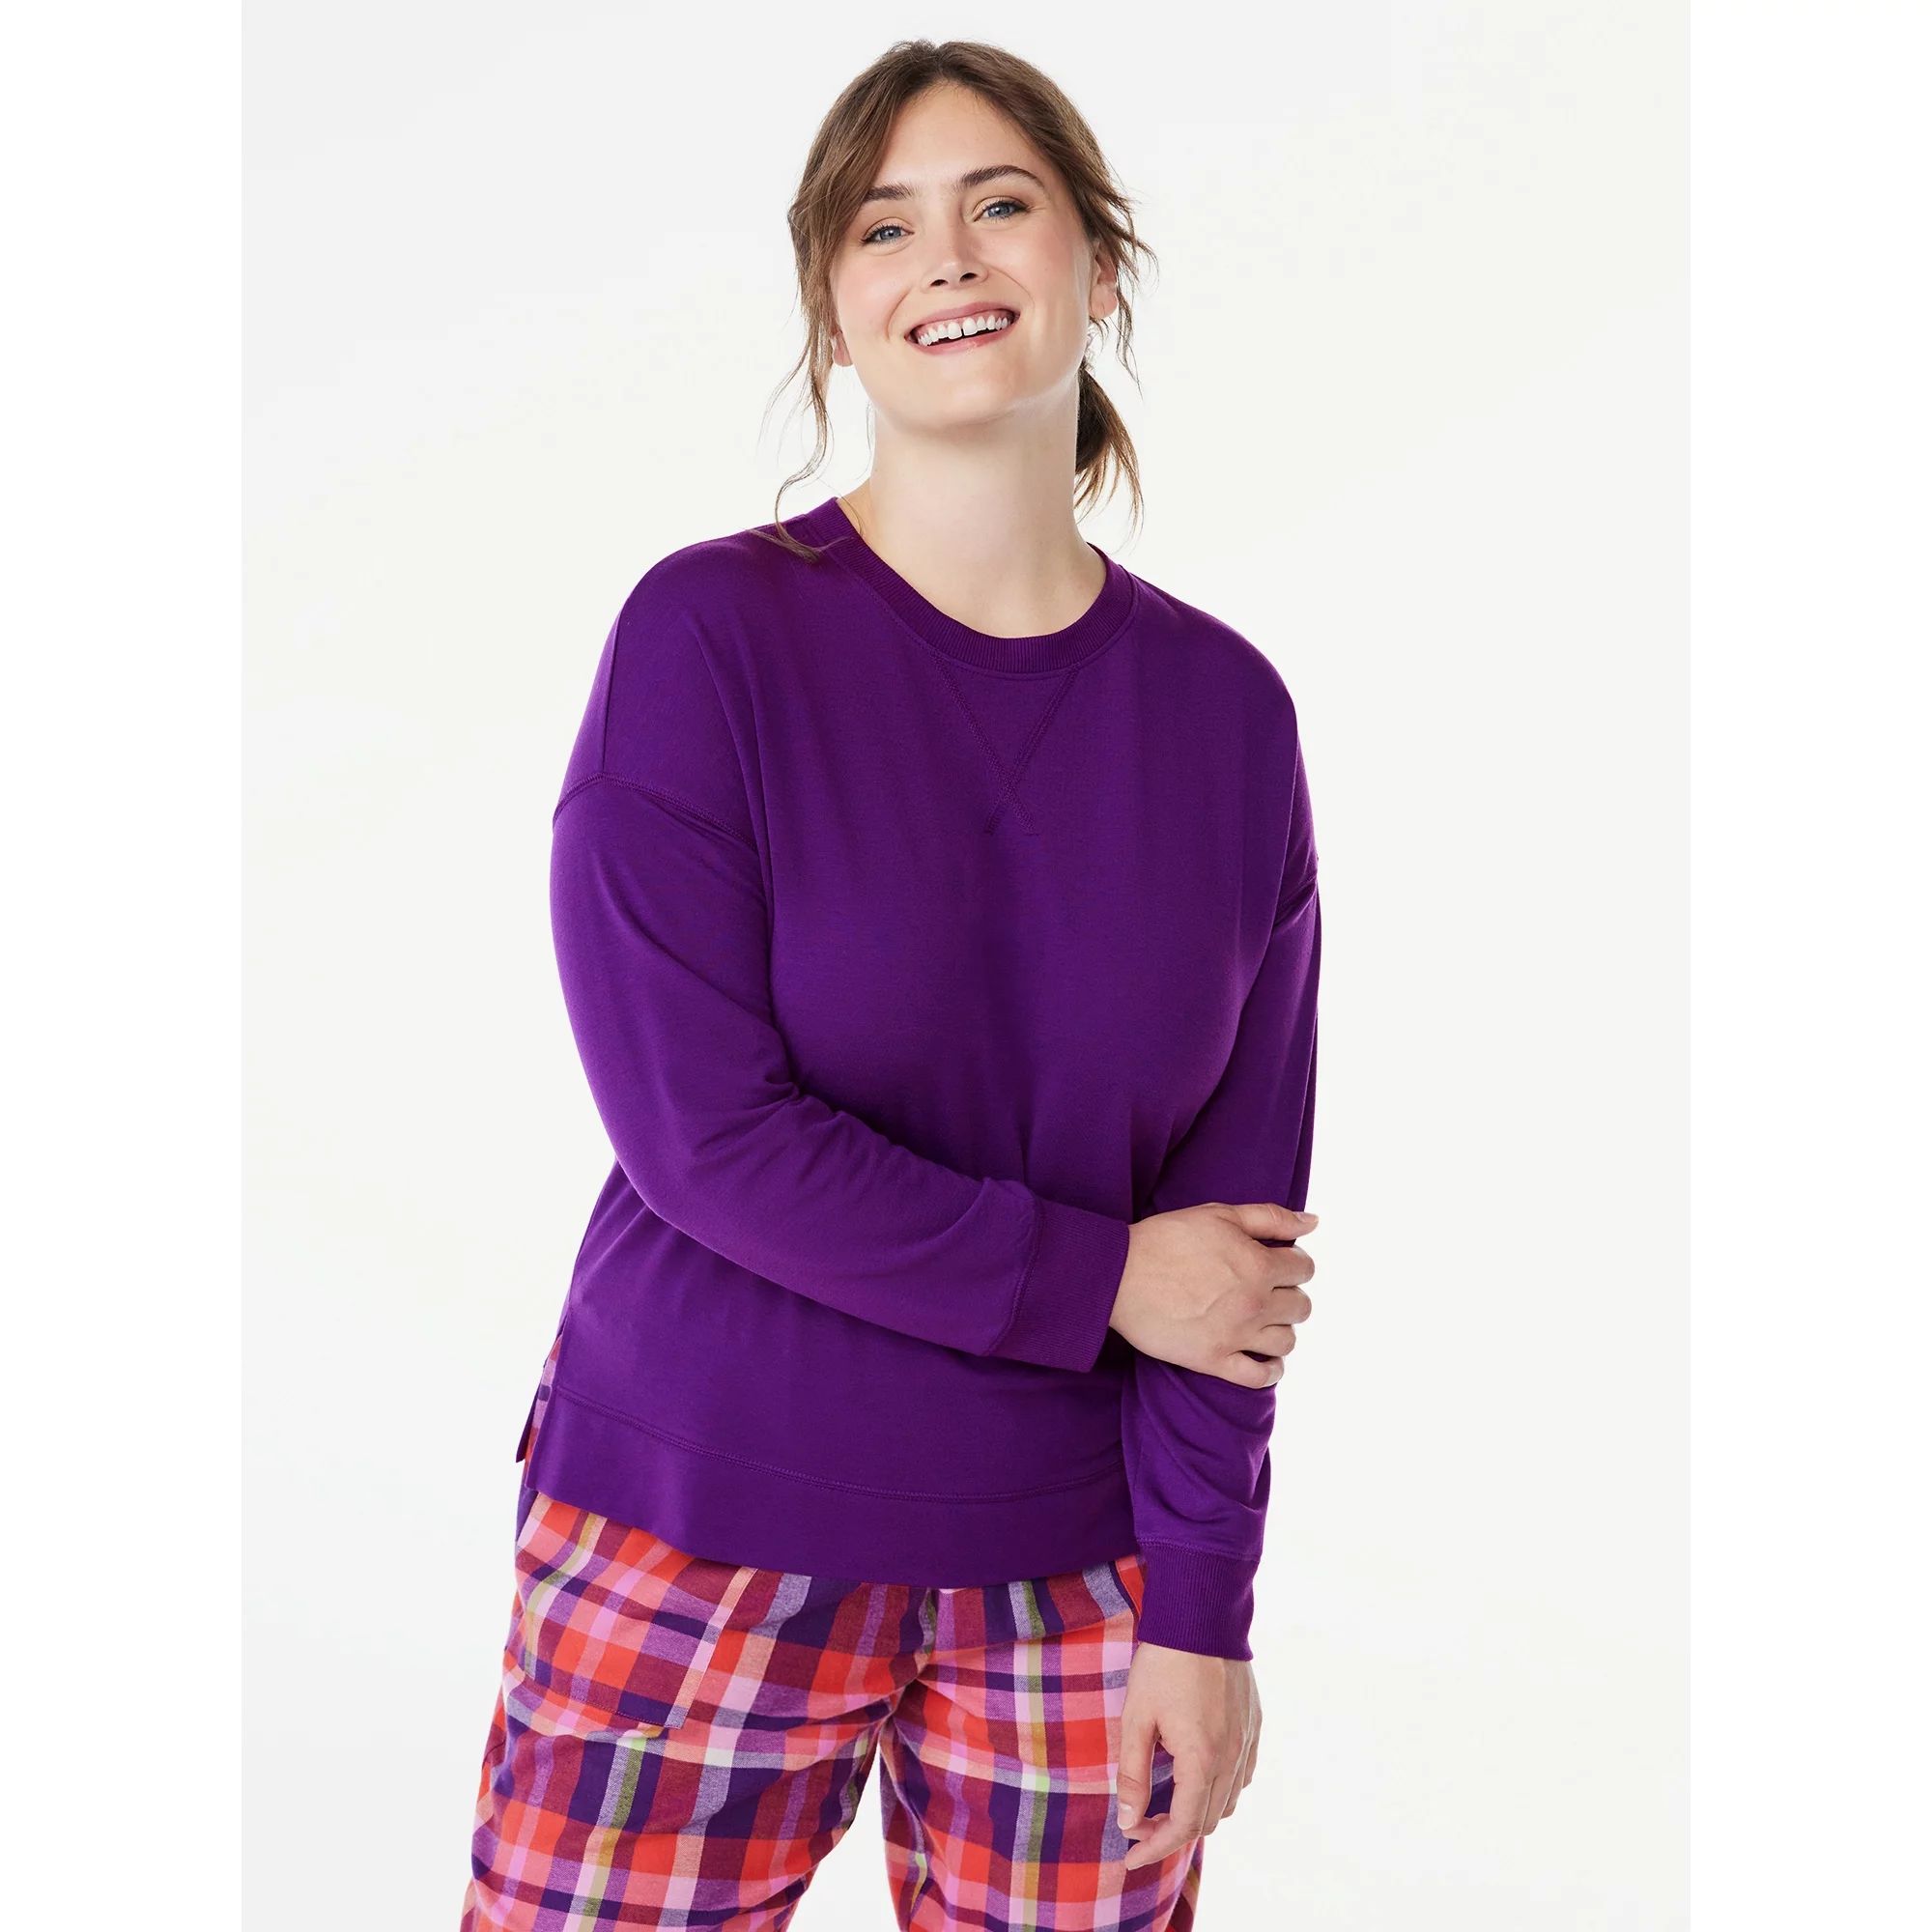 Joyspun Women's French Terry Sleep Top with Long Sleeves, Sizes XS to 3X | Walmart (US)